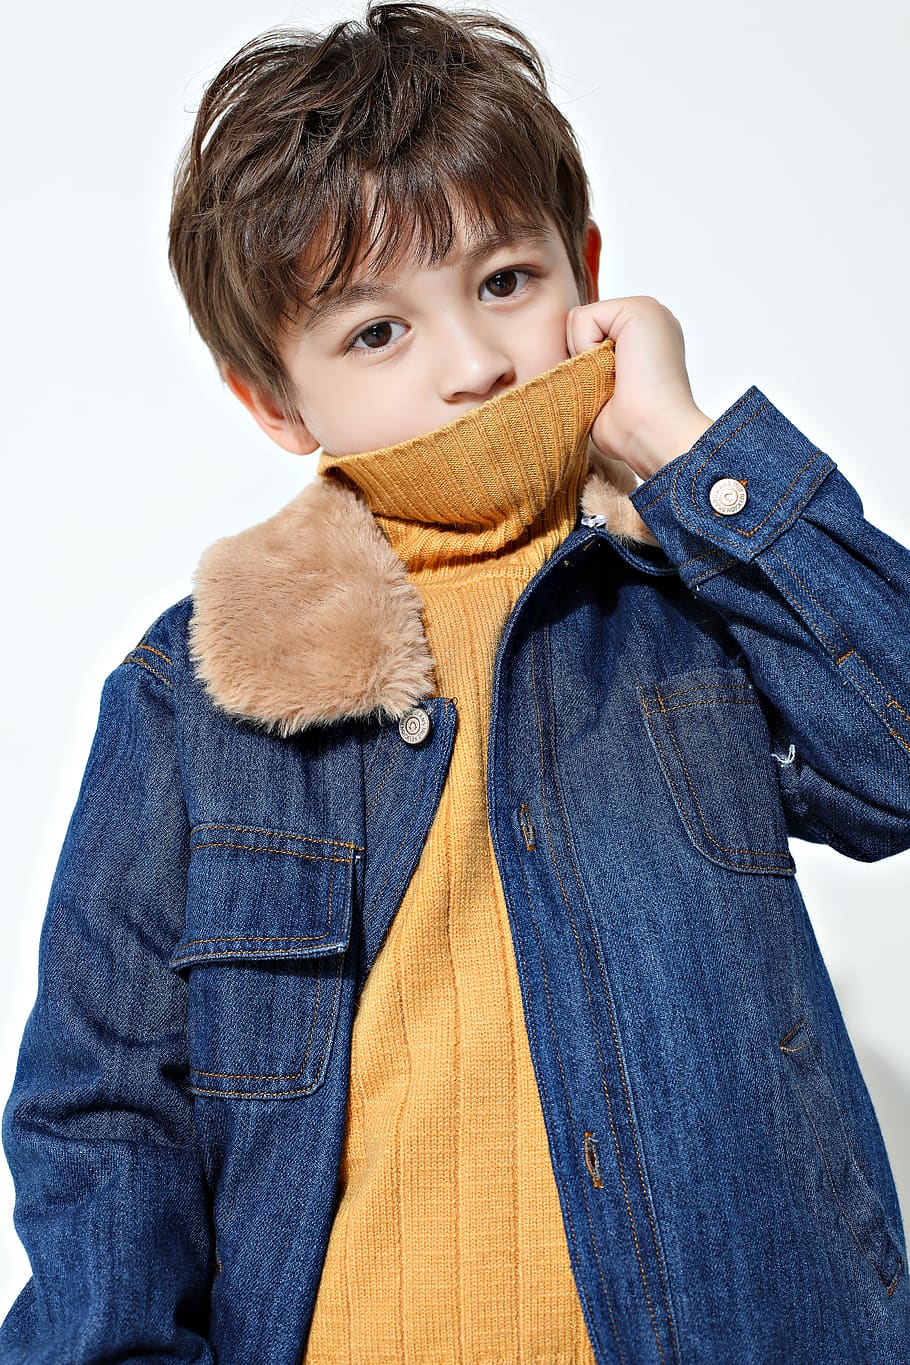 Boy Wearing Blue Denim Jacket, casual, child, cute, fashion, kid